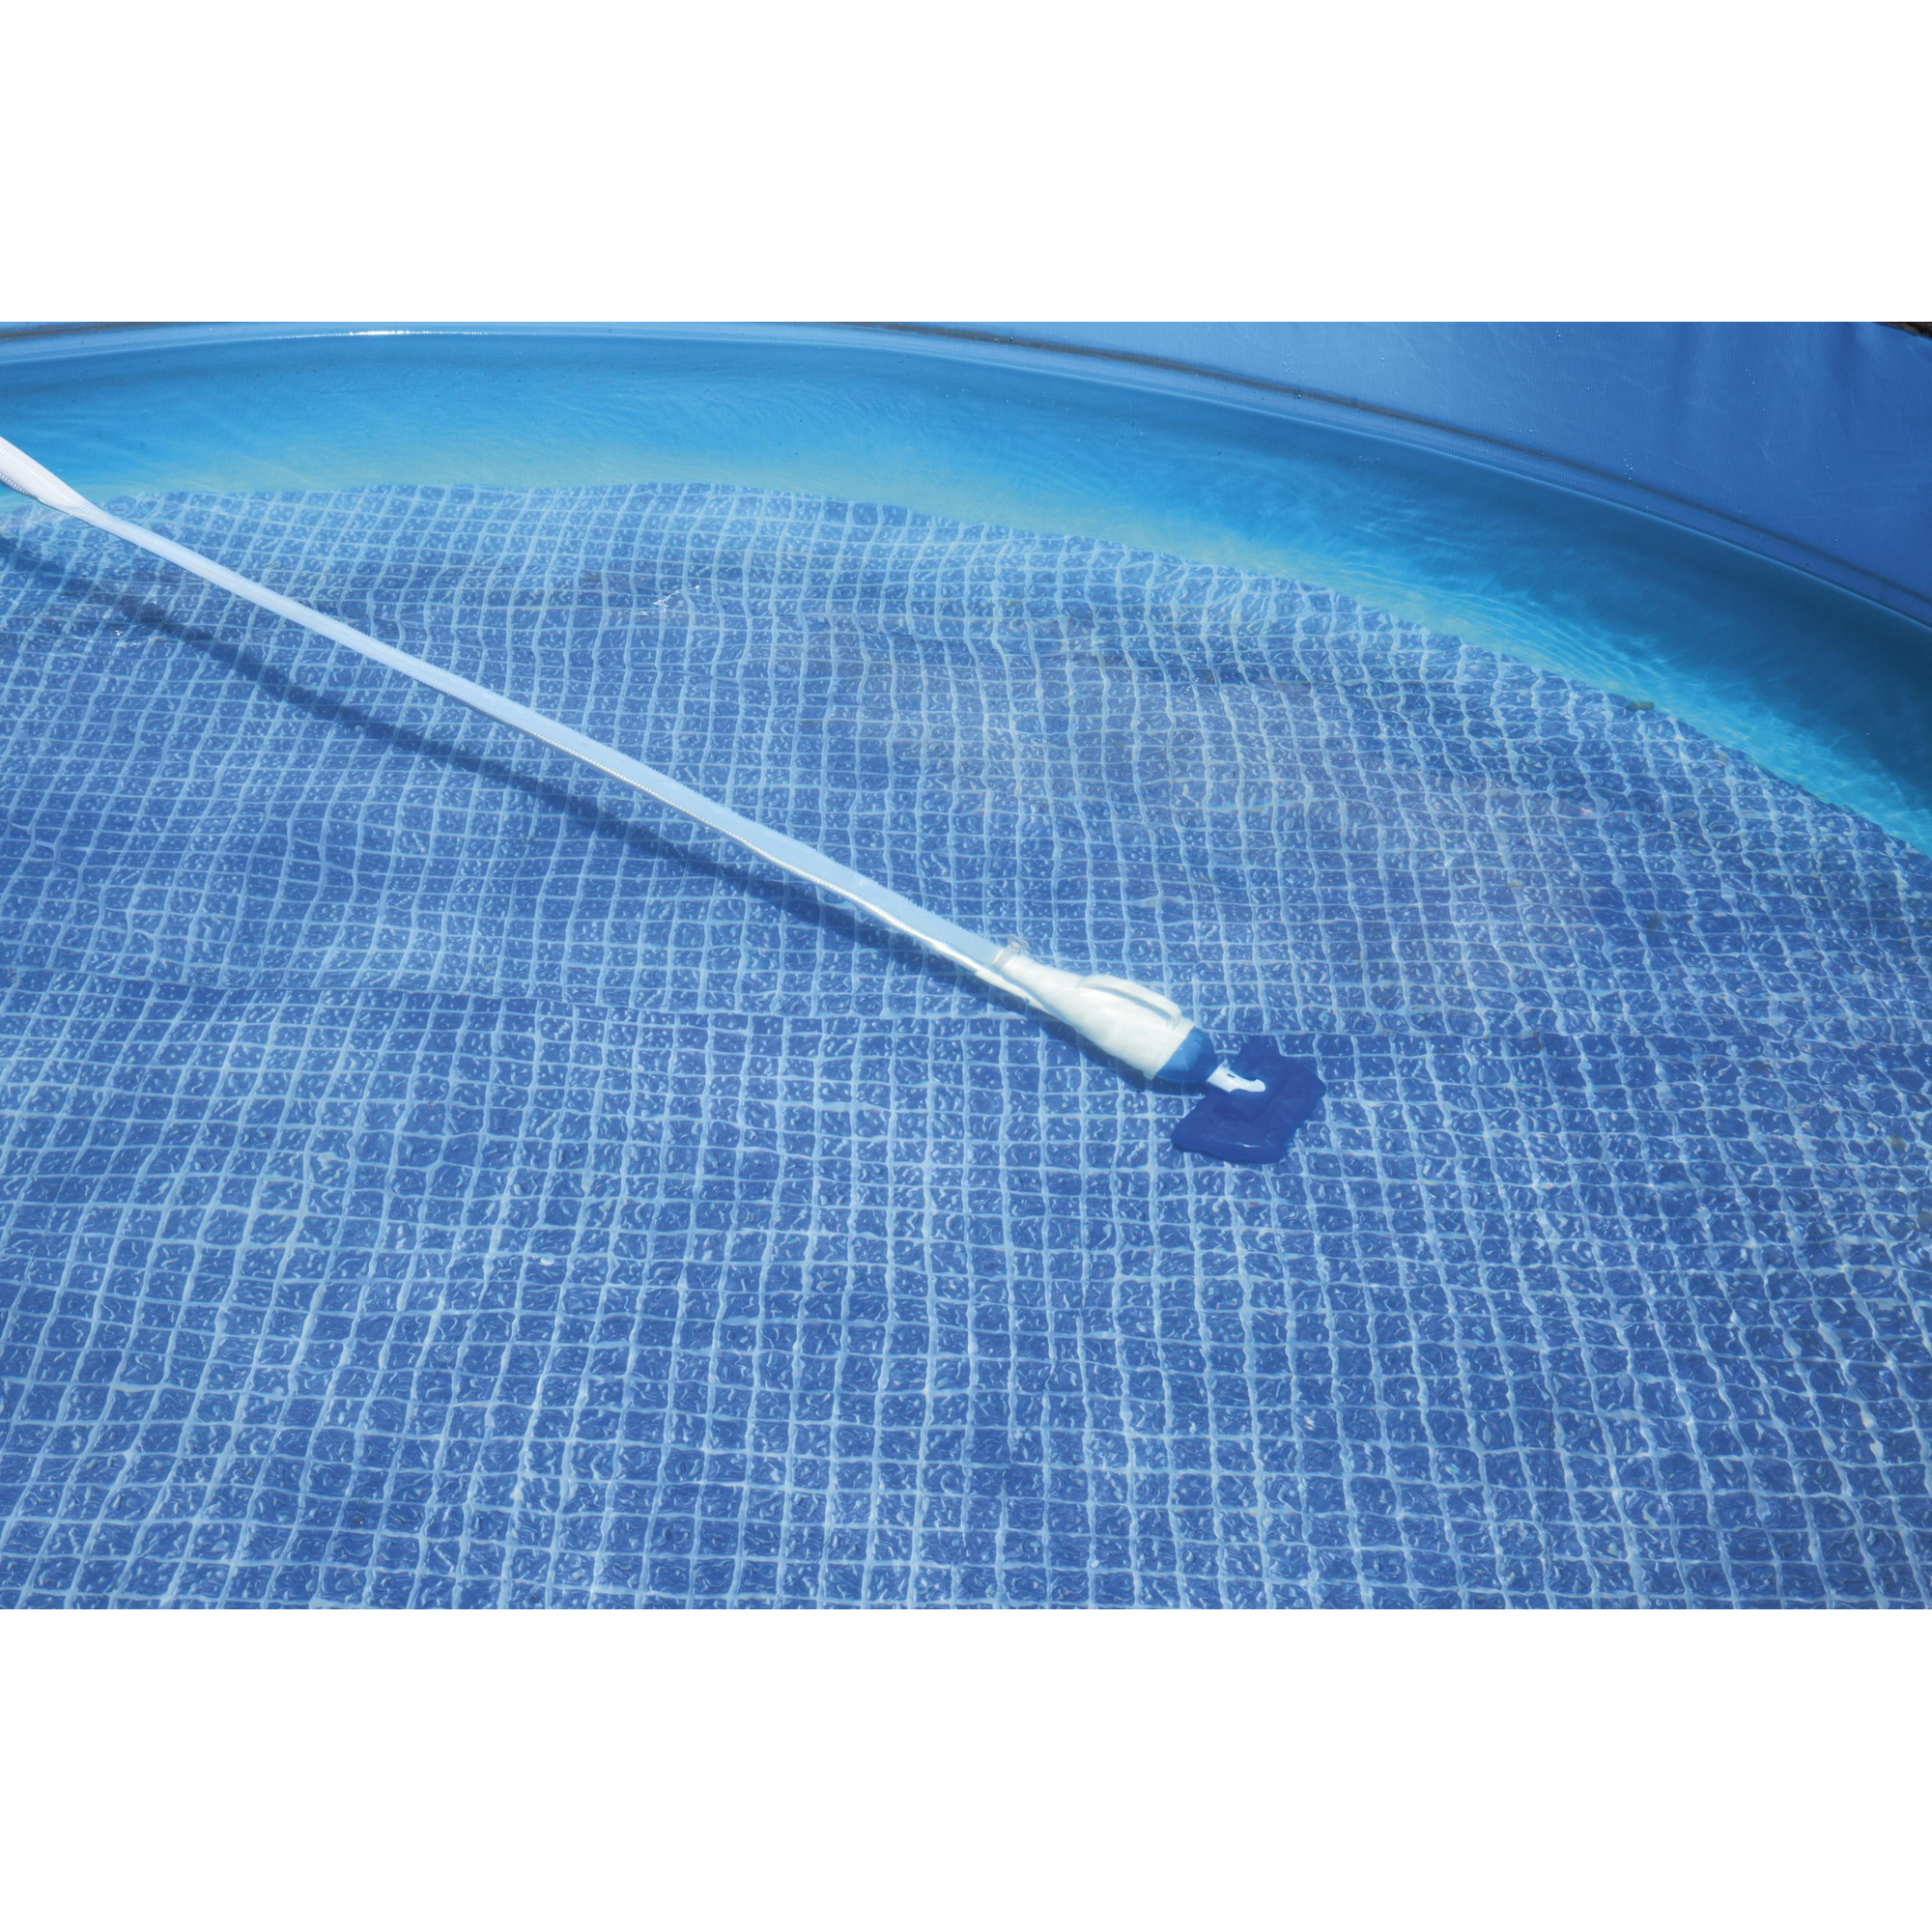 Poolsauger 'Flowclear AquaCrawl' pumpenbetrieben für Poolgrößen bis 457 cm + product picture